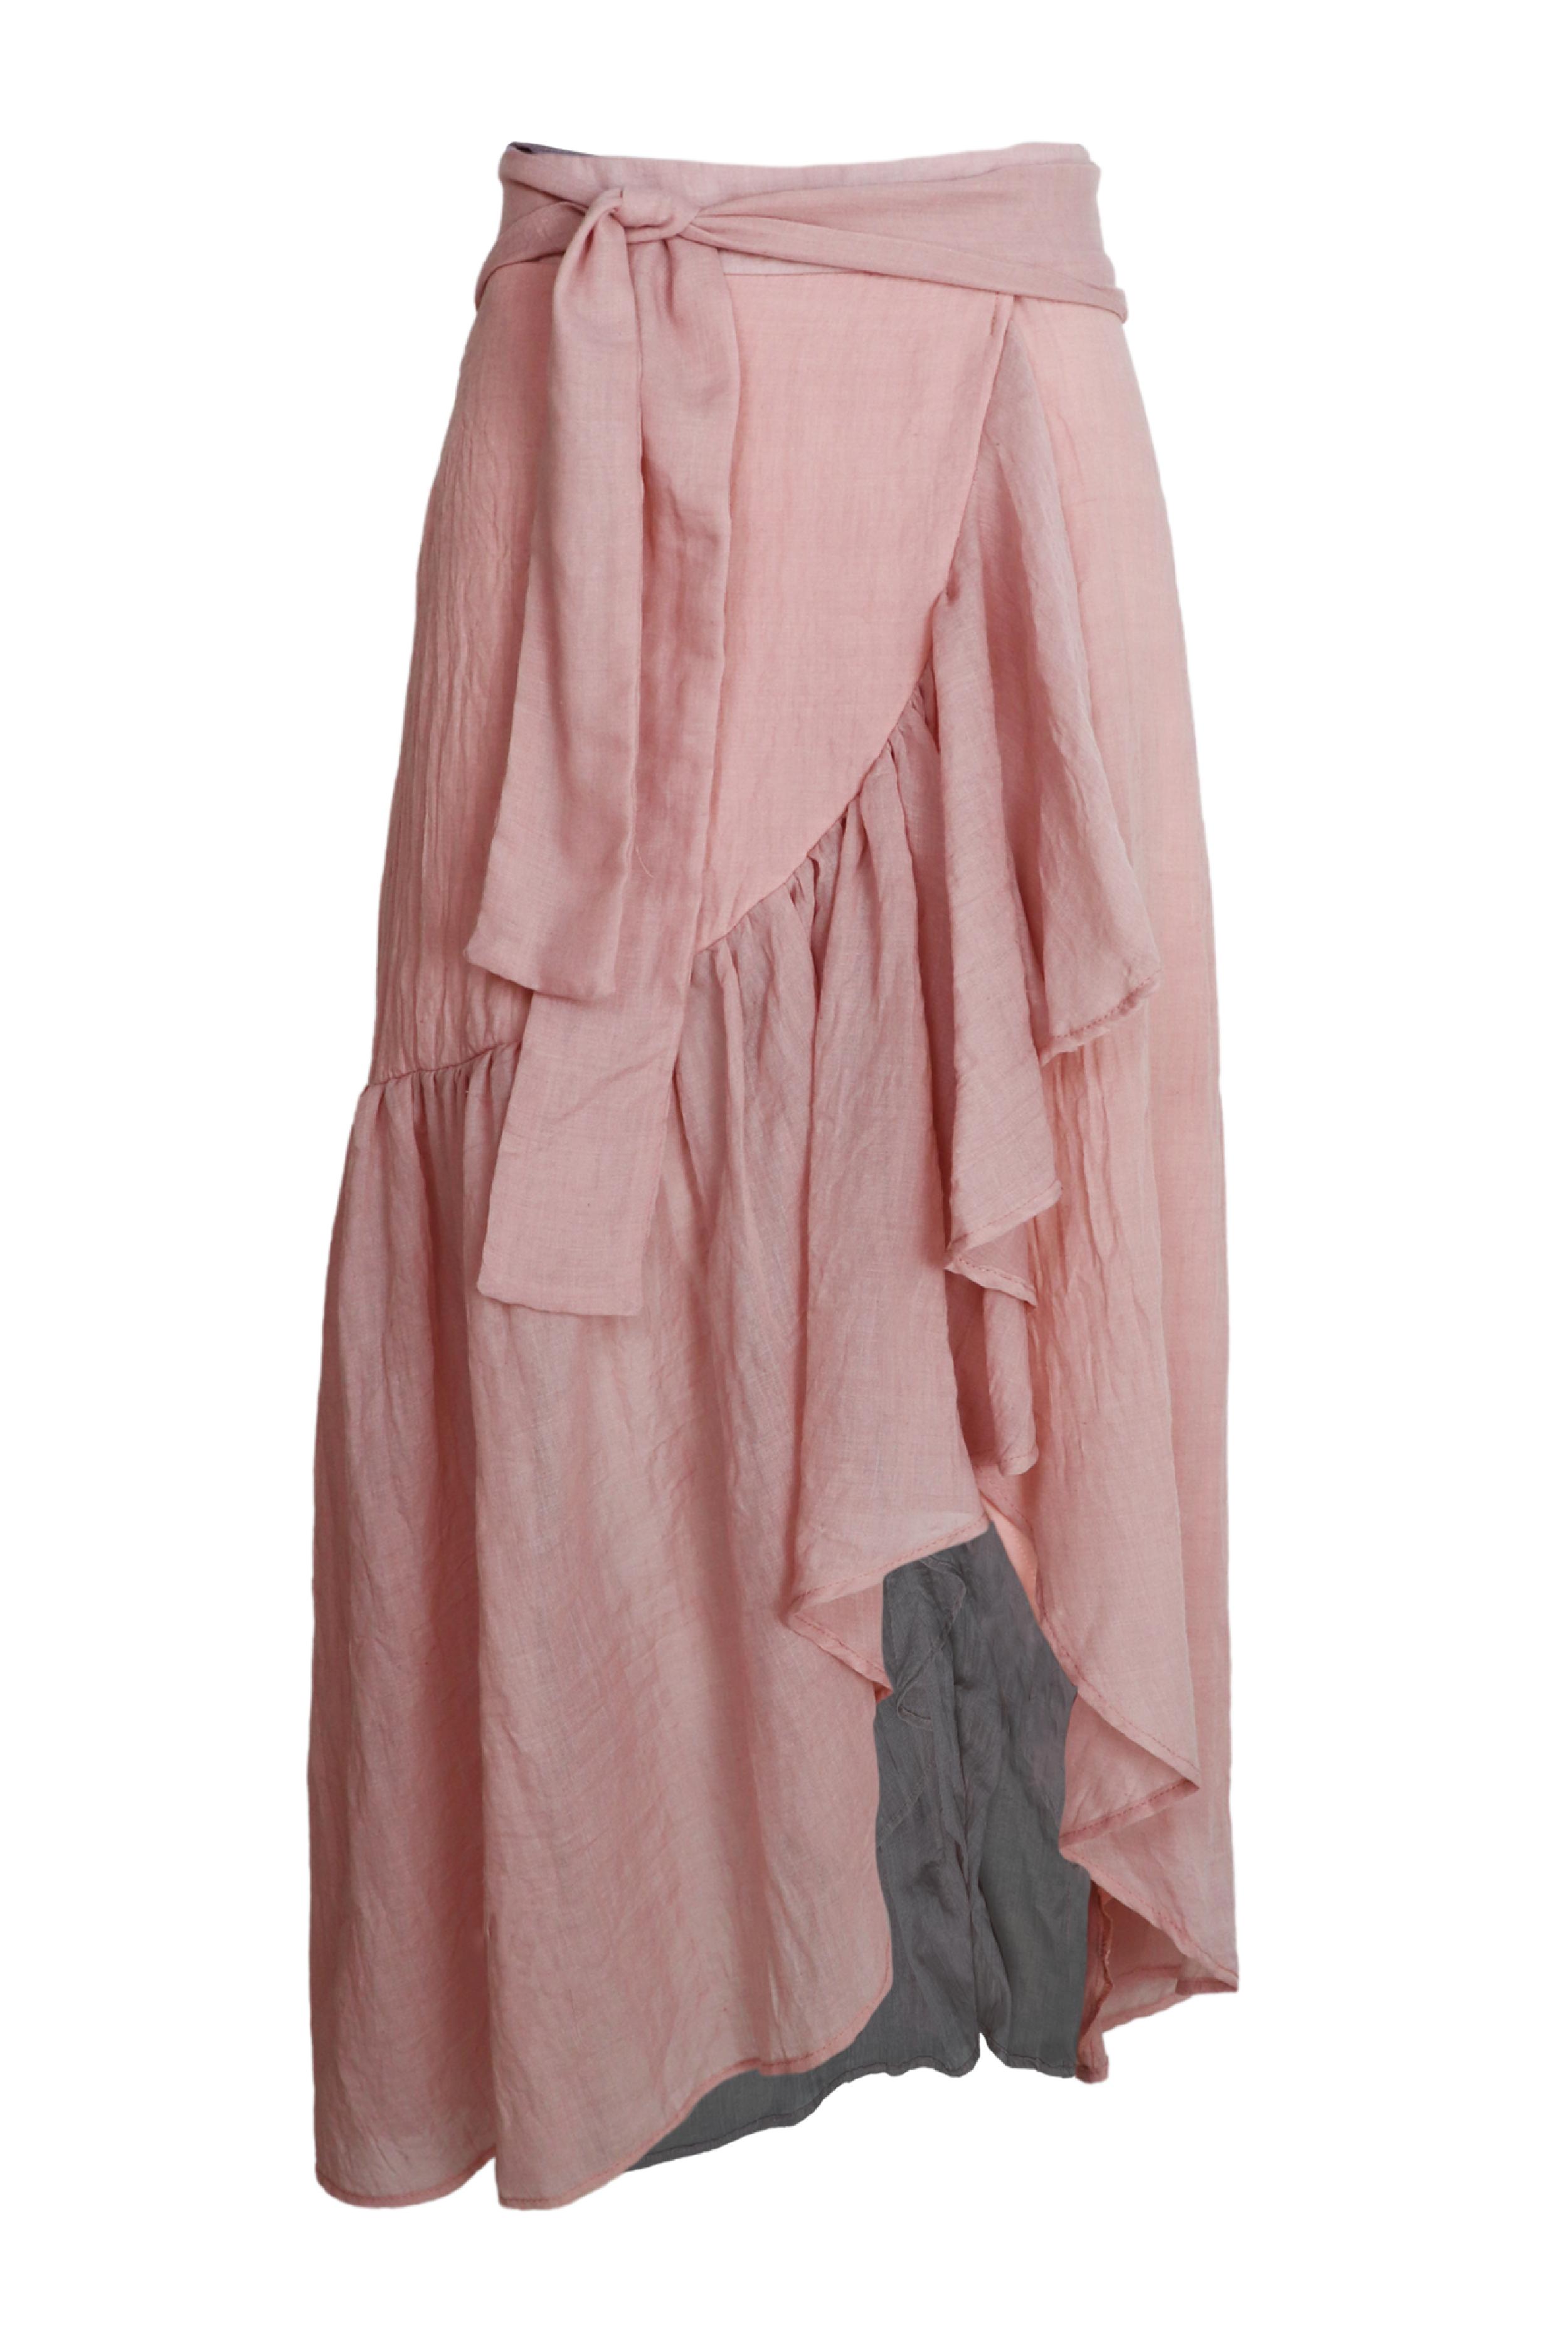 Hermosa falda midi con lazos para ajustar en cintura color palo de rosa